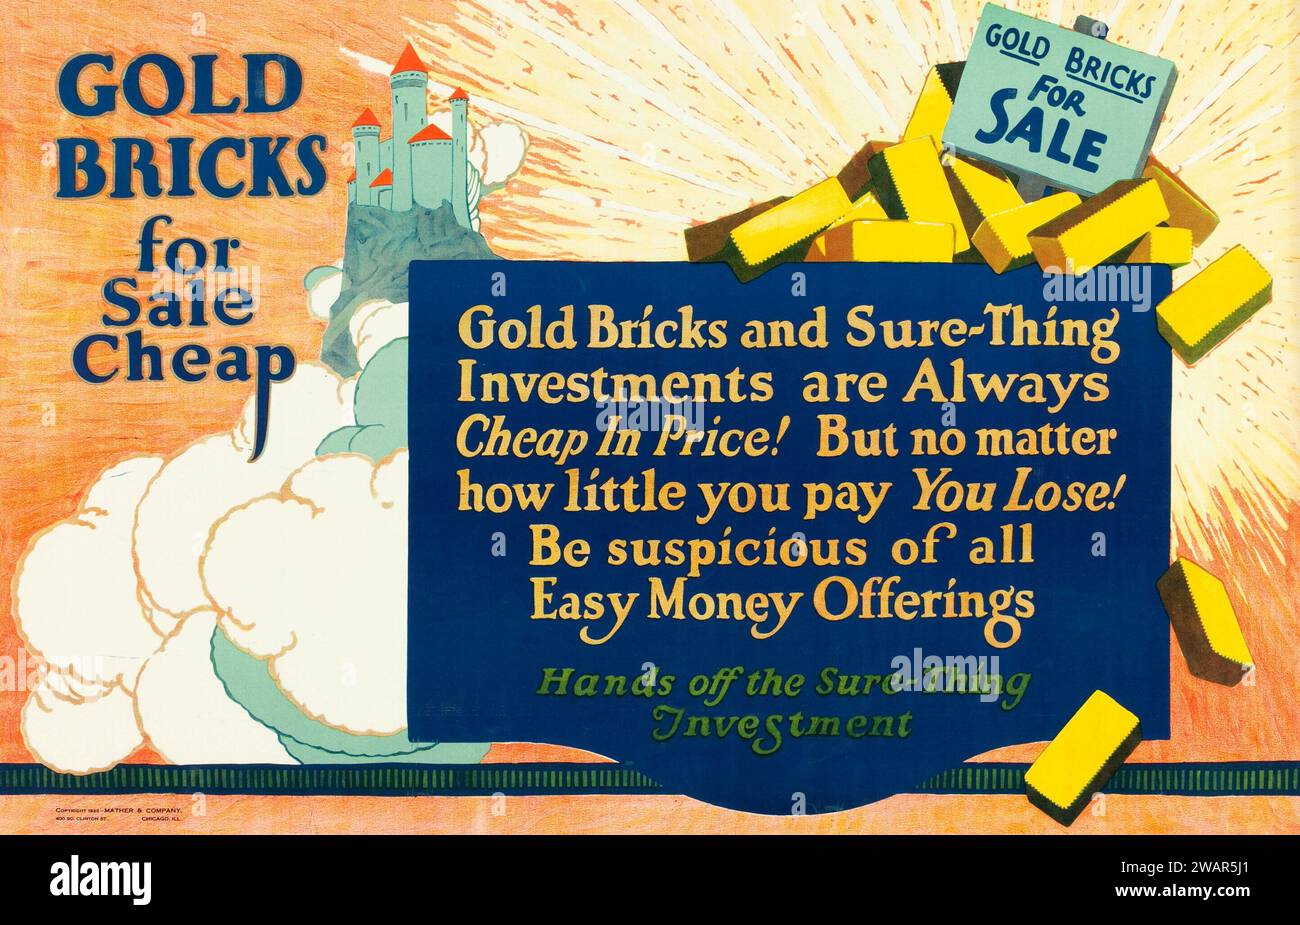 Briques d'or à vendre bon marché (1923). Mather and Company Motivational Poster - méfiez-vous des offres d'argent faciles Banque D'Images